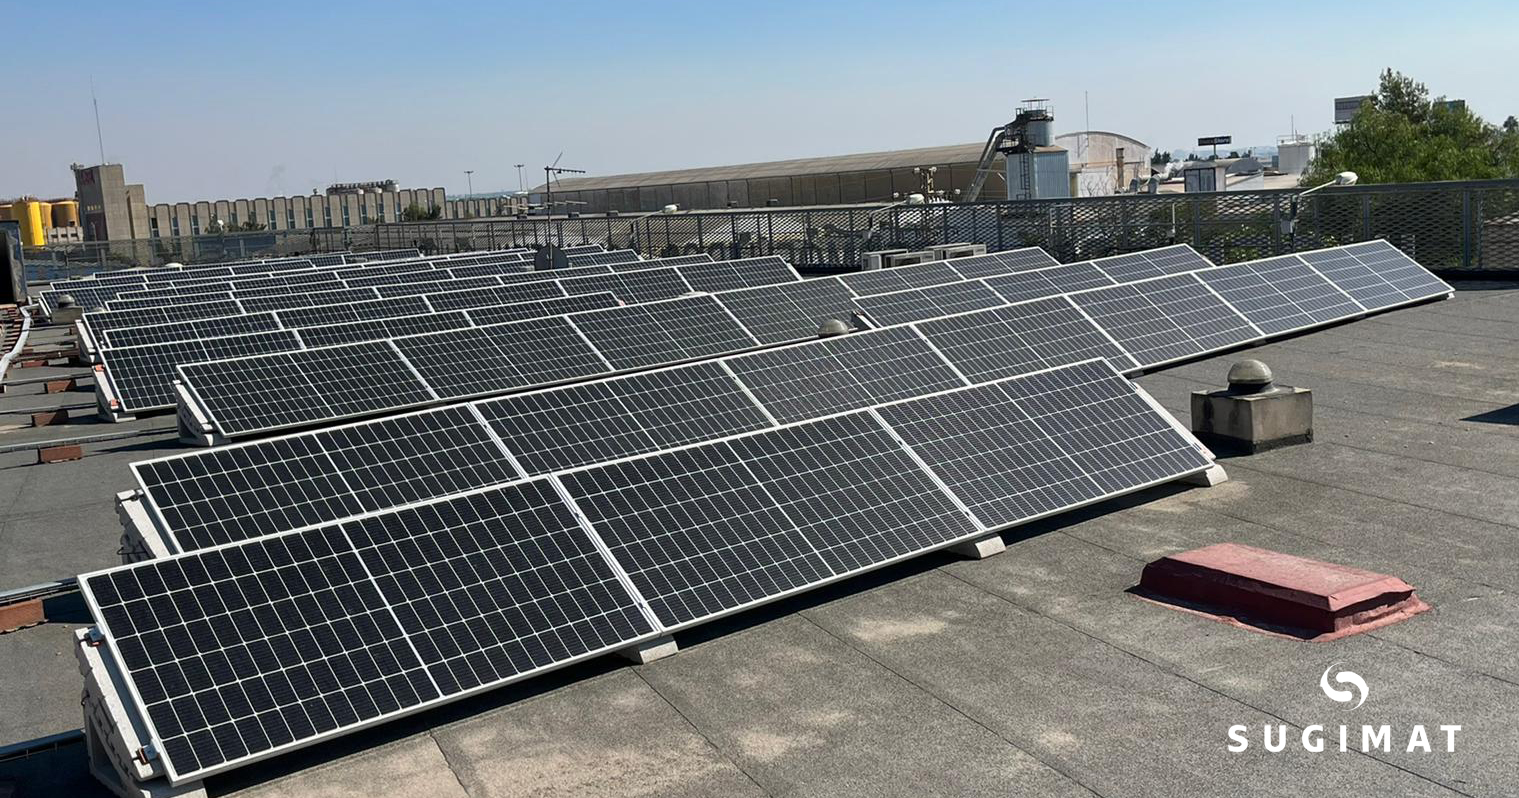 Placas solares subvención Sugimat